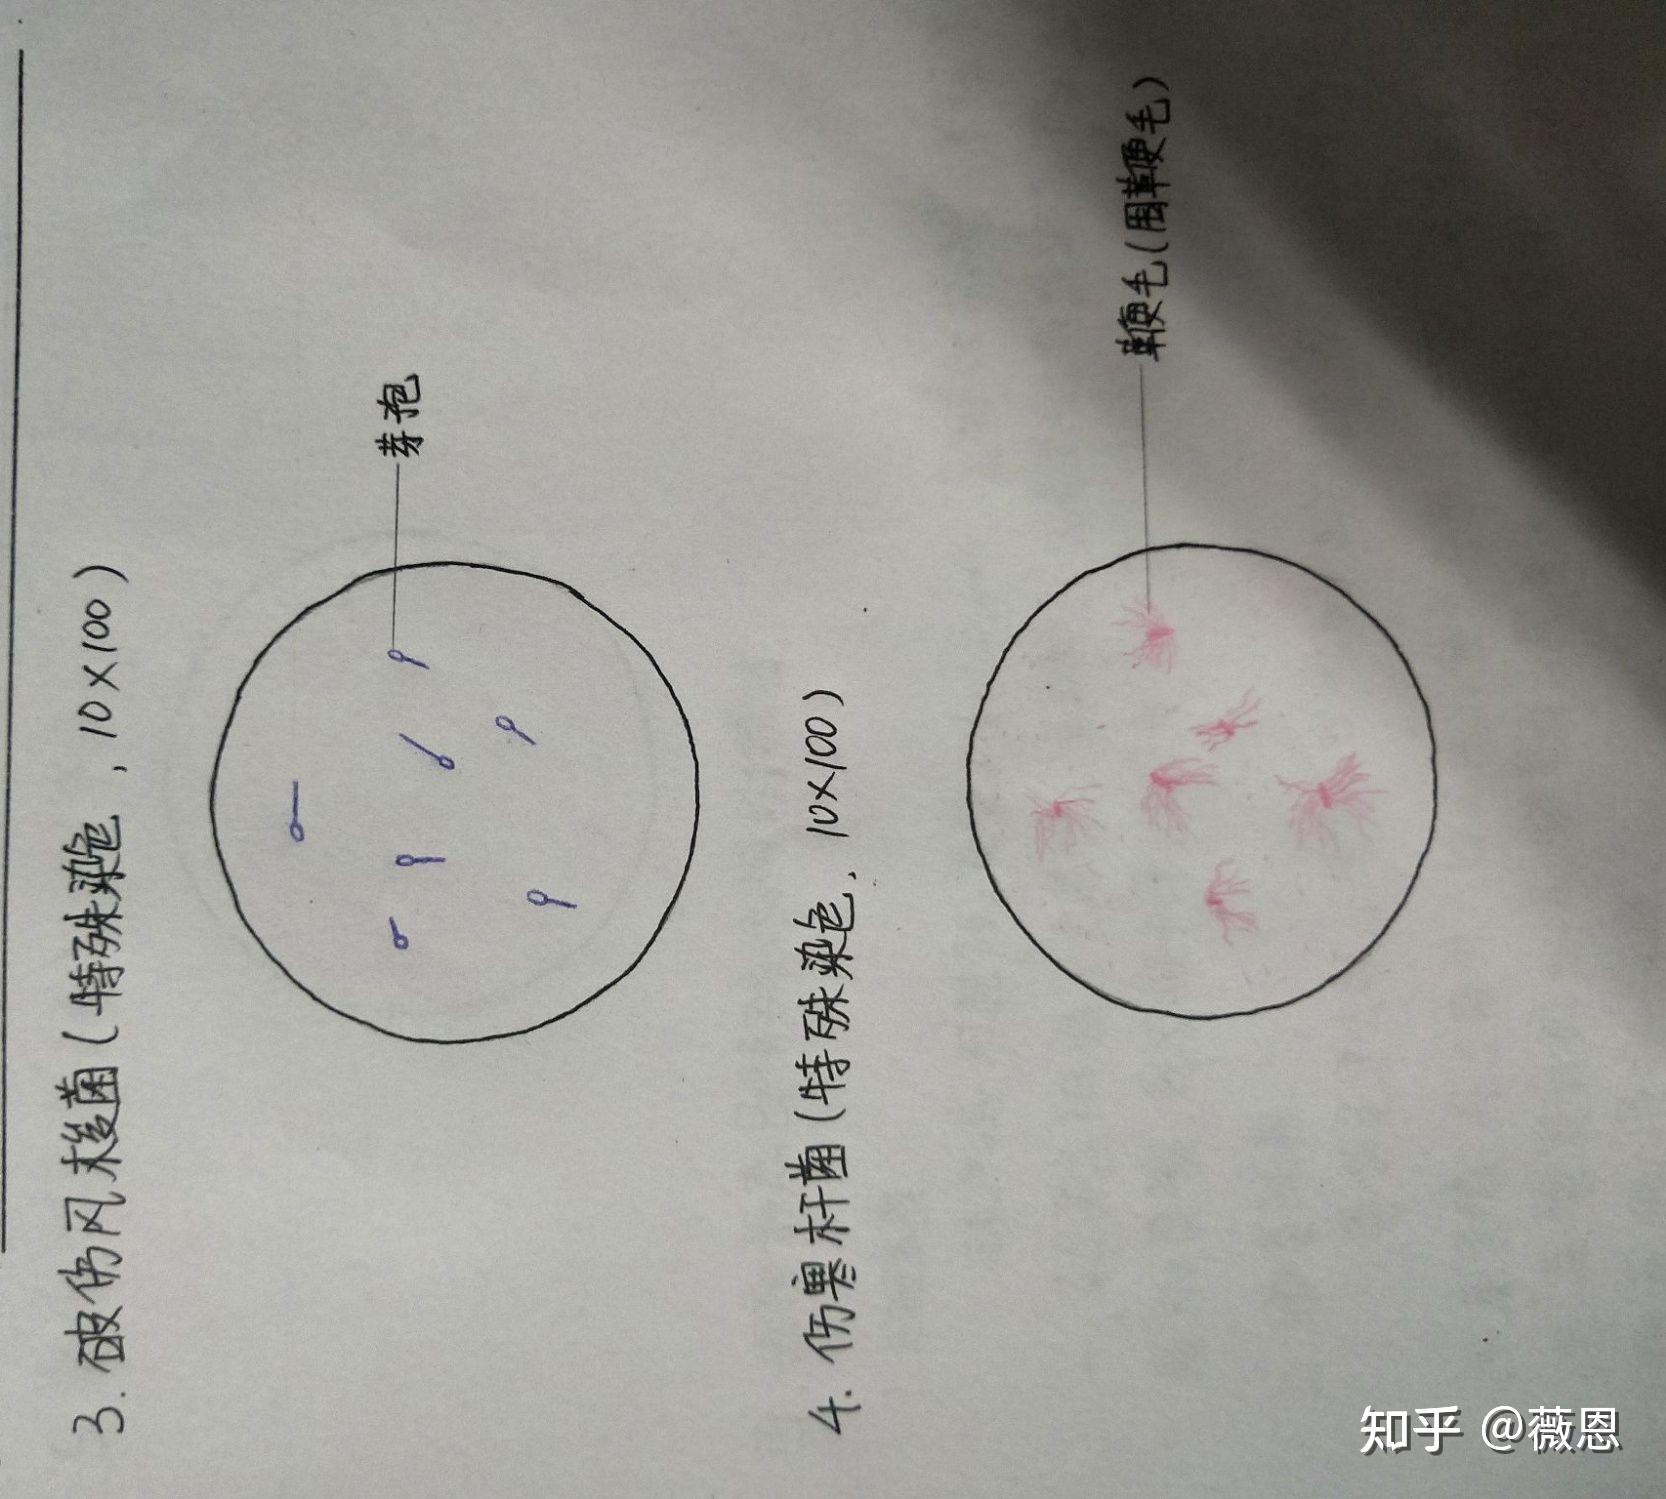 医学生,佛系的爱猫少女 351人赞同了该文章 破伤风梭菌 产气荚膜梭菌